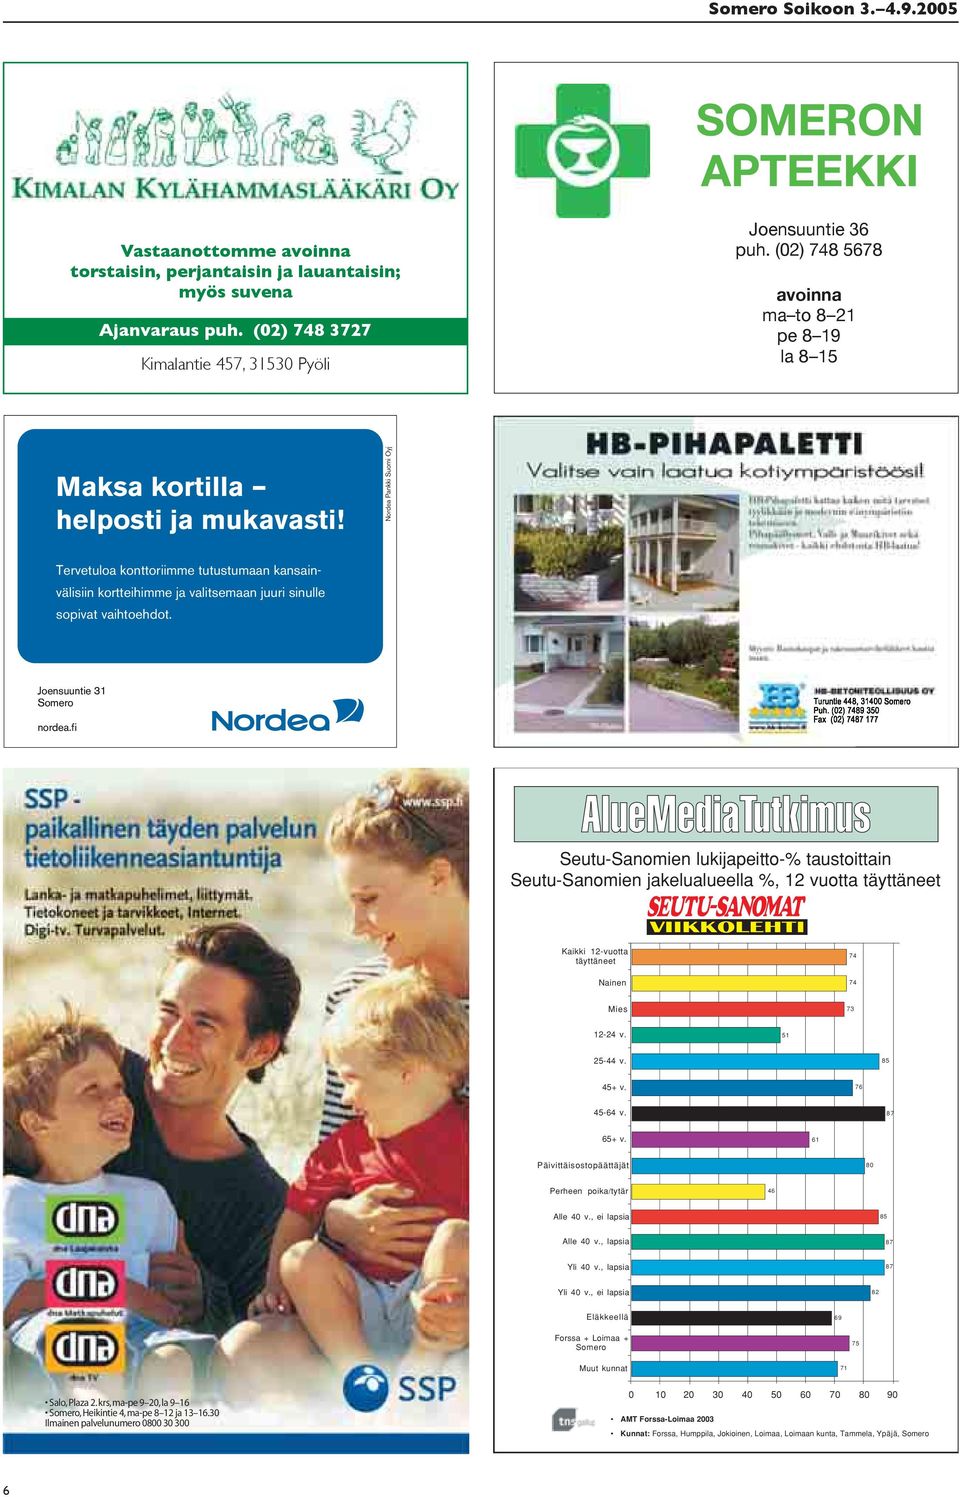 Nordea Pankki Suomi Oyj Tervetuloa konttoriimme tutustumaan kansainvälisiin kortteihimme ja valitsemaan juuri sinulle sopivat vaihtoehdot. Joensuuntie 31 Somero nordea.